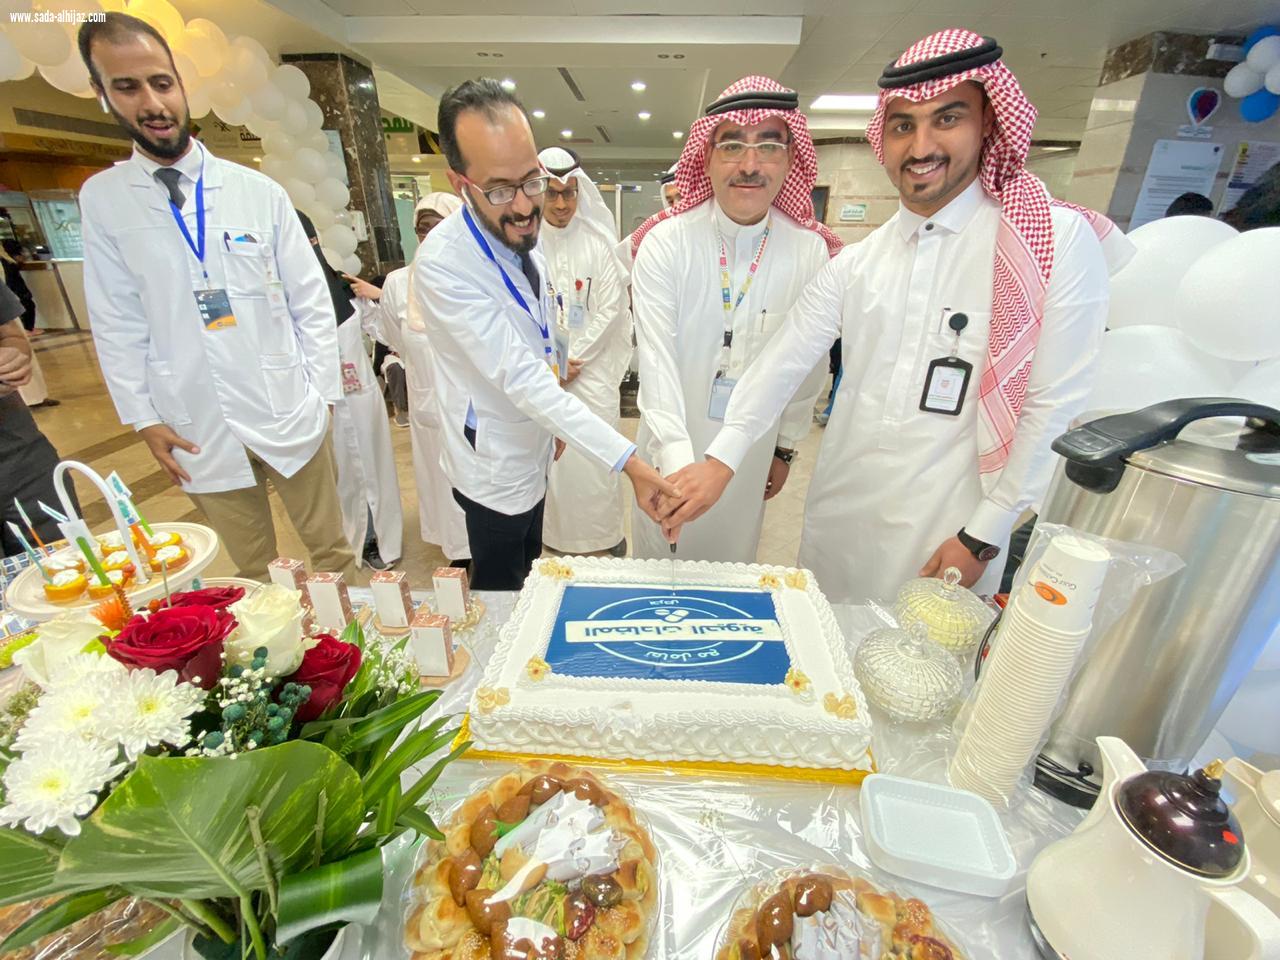 فعاليات توعوية بالأسبوع العالمي للتوعية بالمضادات الحيوية بمستشفى الملك فهد بالمدينة